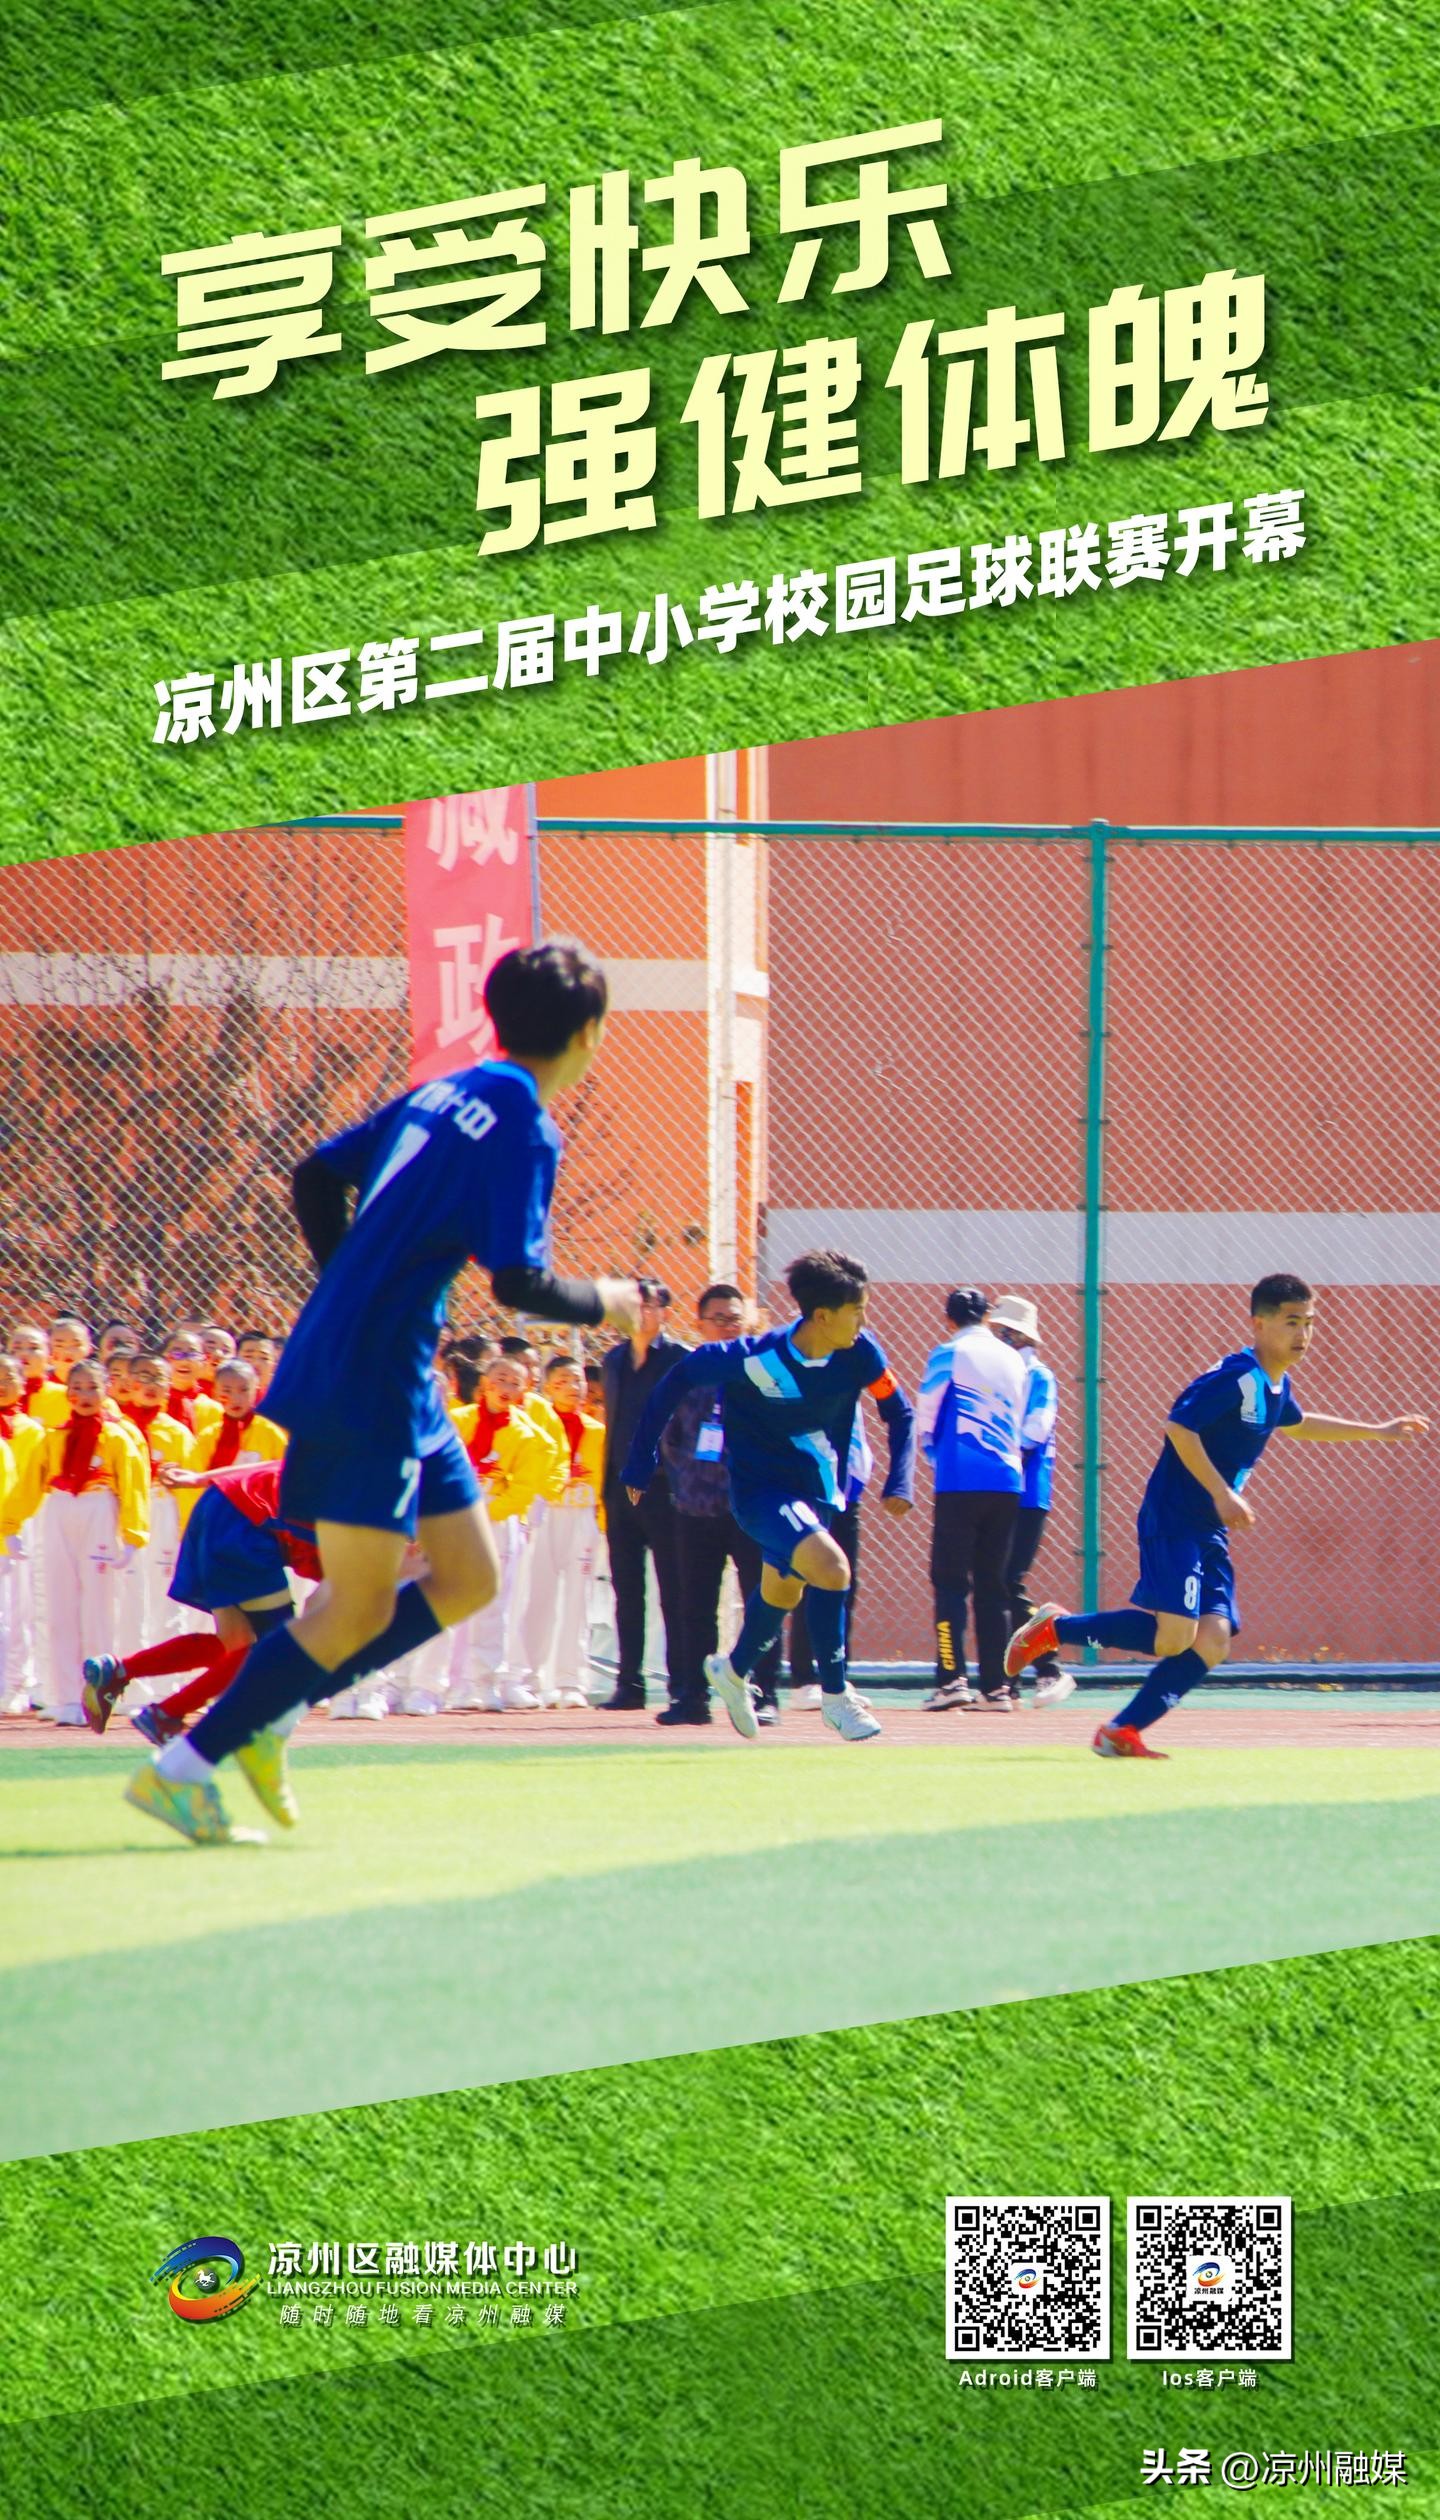 享受快乐 强健体魄——凉州区第二届中小学校园足球联赛开幕